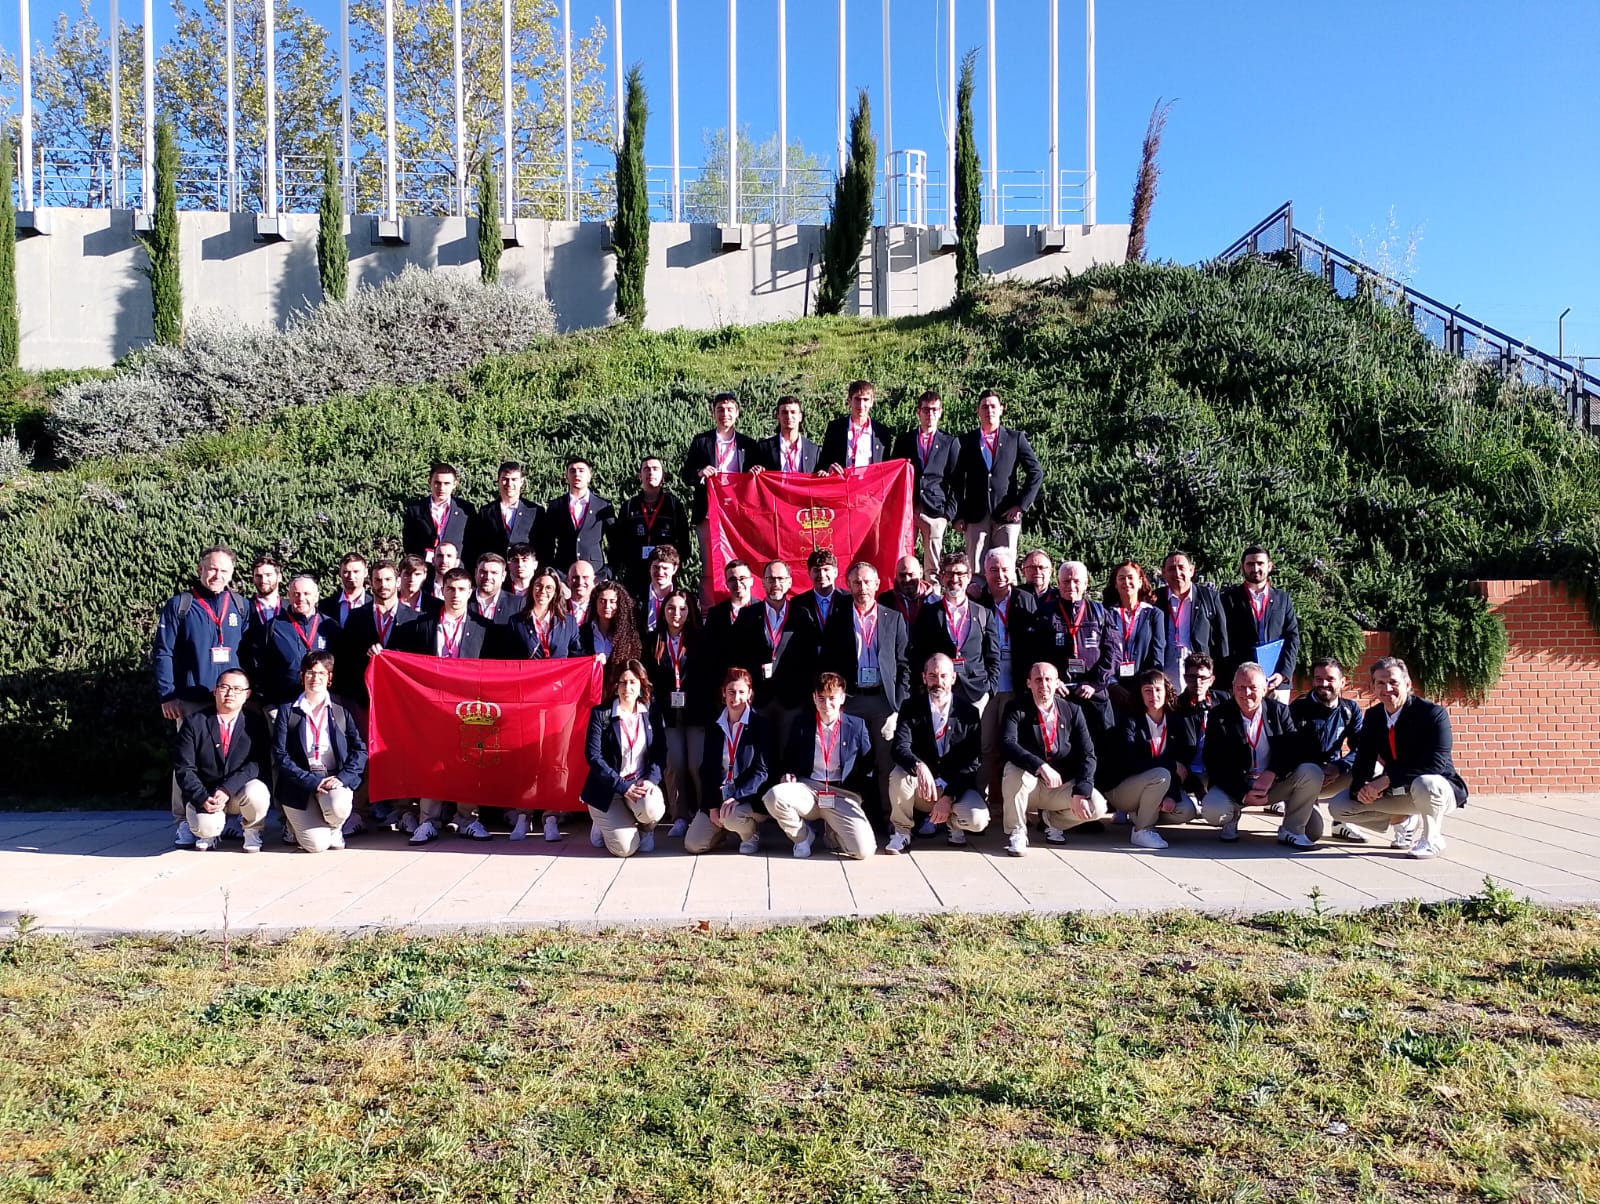 La expedición navarra en las ‘olimpiadas’ de FP Spainskills, formada con 46 estudiantes y profesores-tutores, preparada para competir en Madrid desde mañana